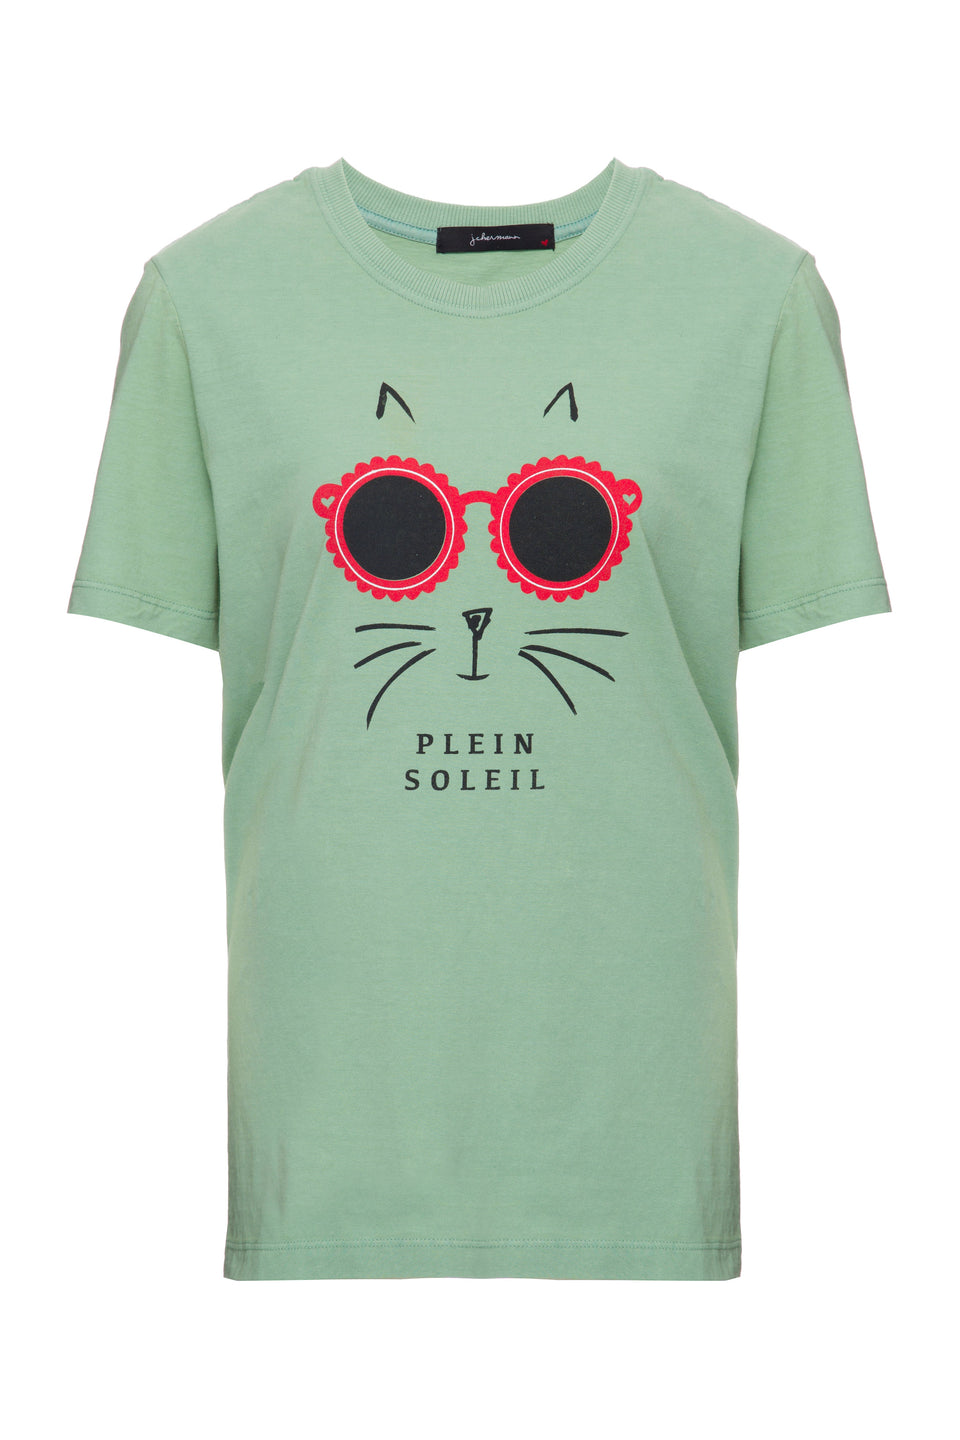 Camiseta Gato Óculos Verde